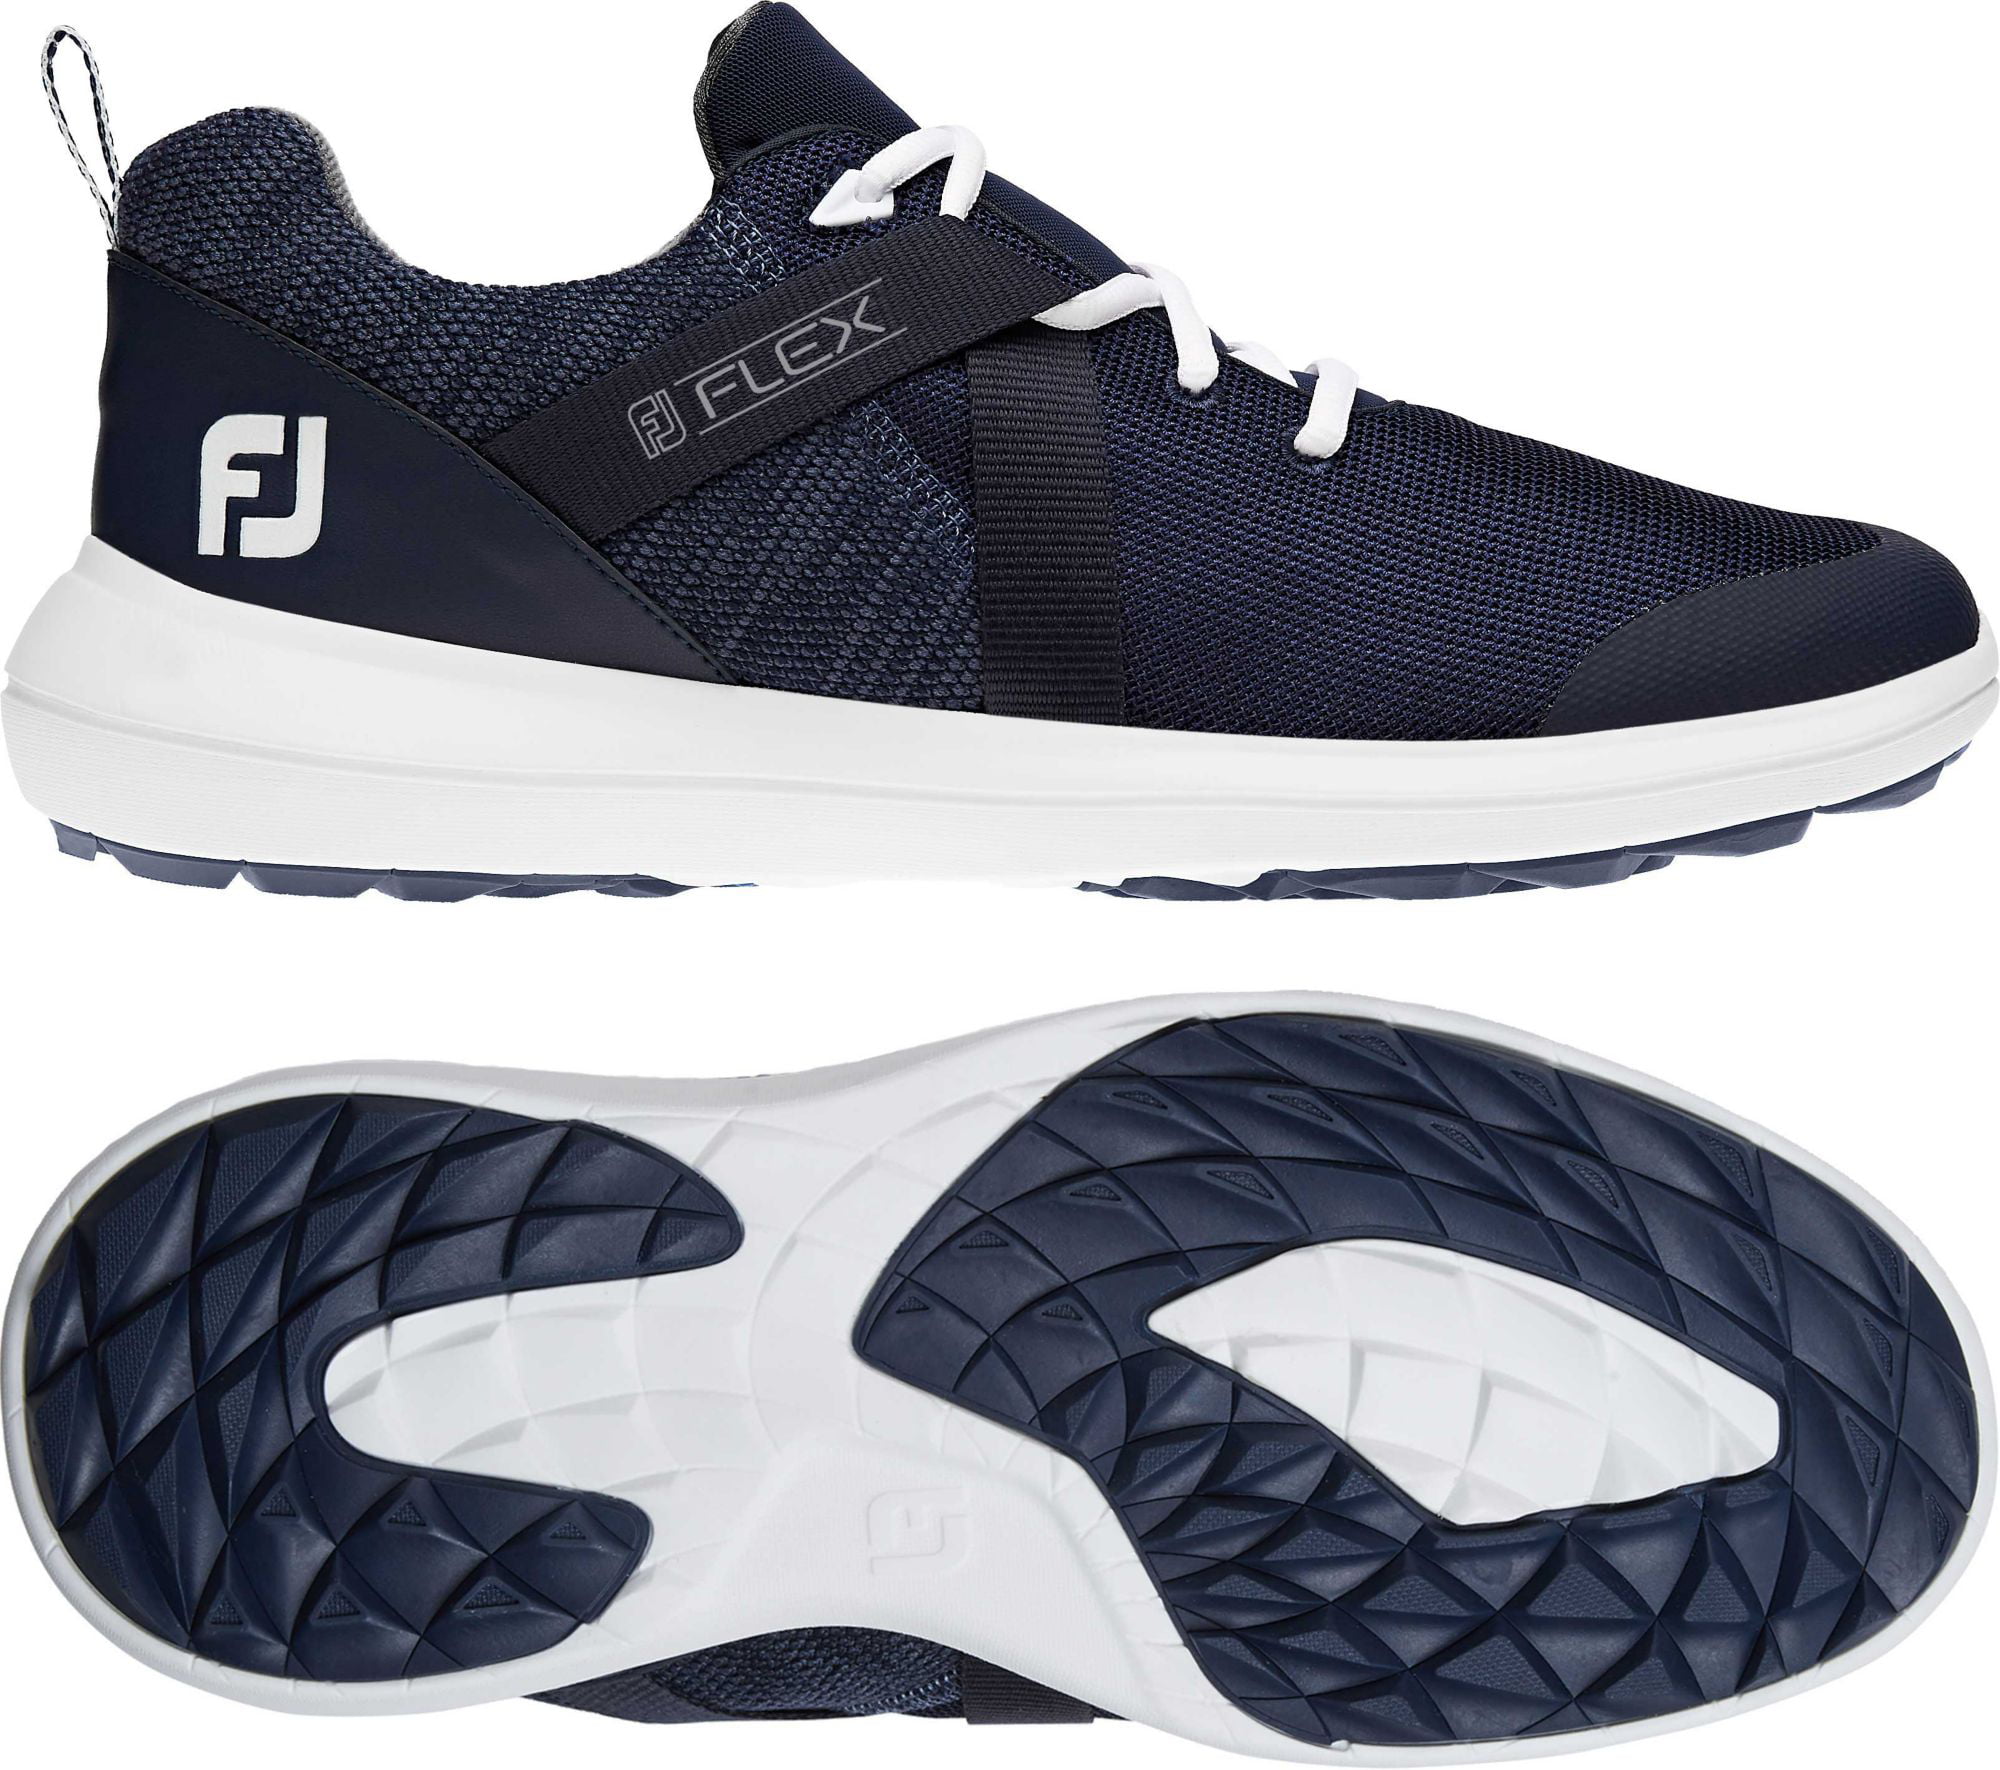 How to choose the best men's footjoy flex golf shoes?